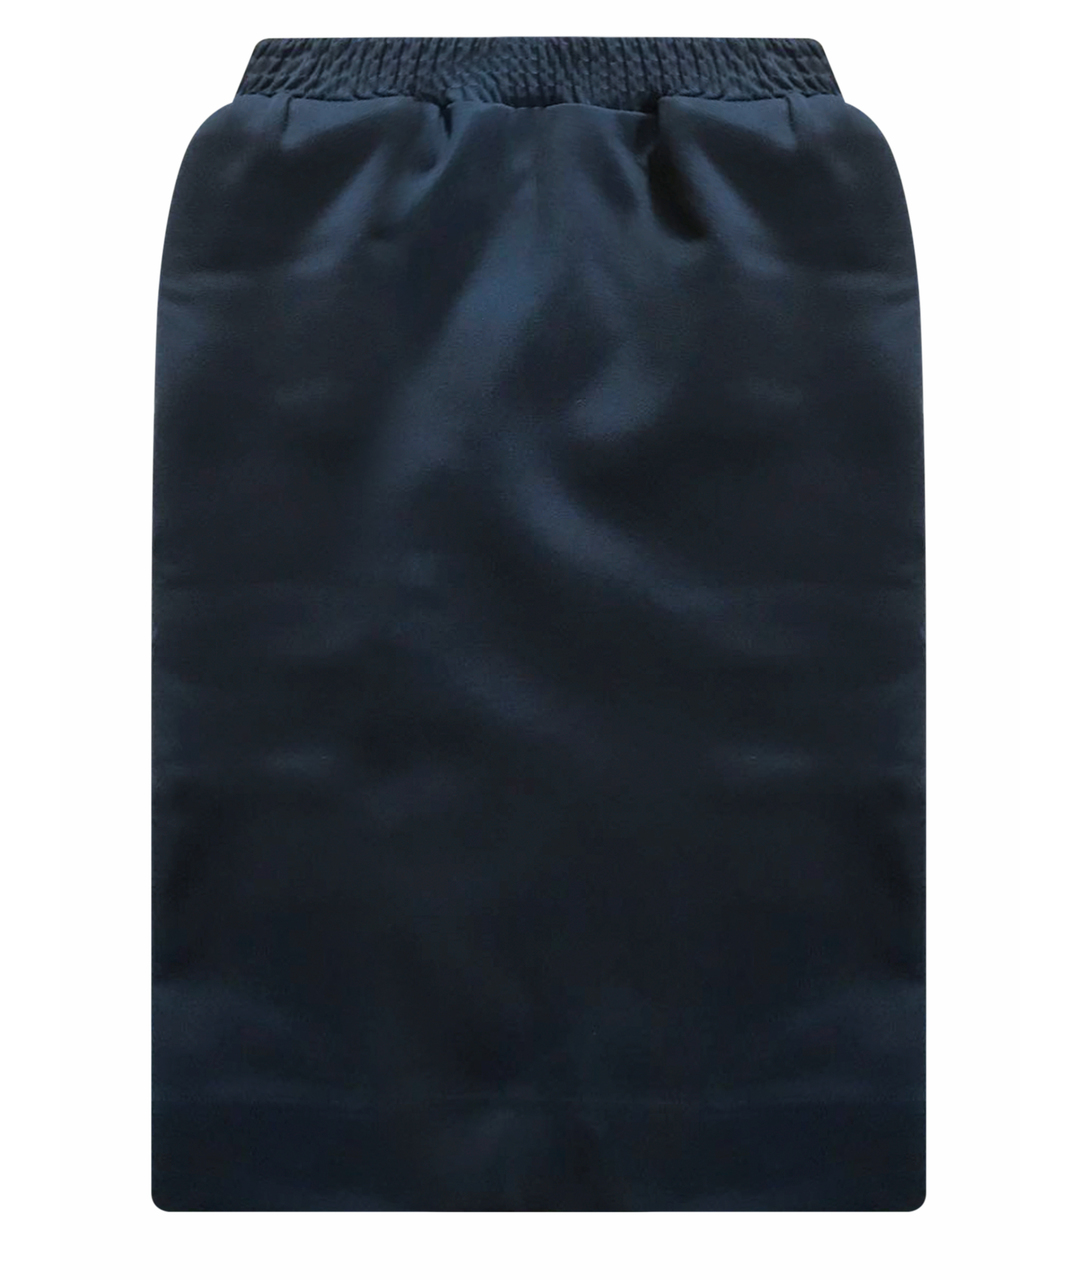 BALENCIAGA Черная вискозная юбка миди, фото 1